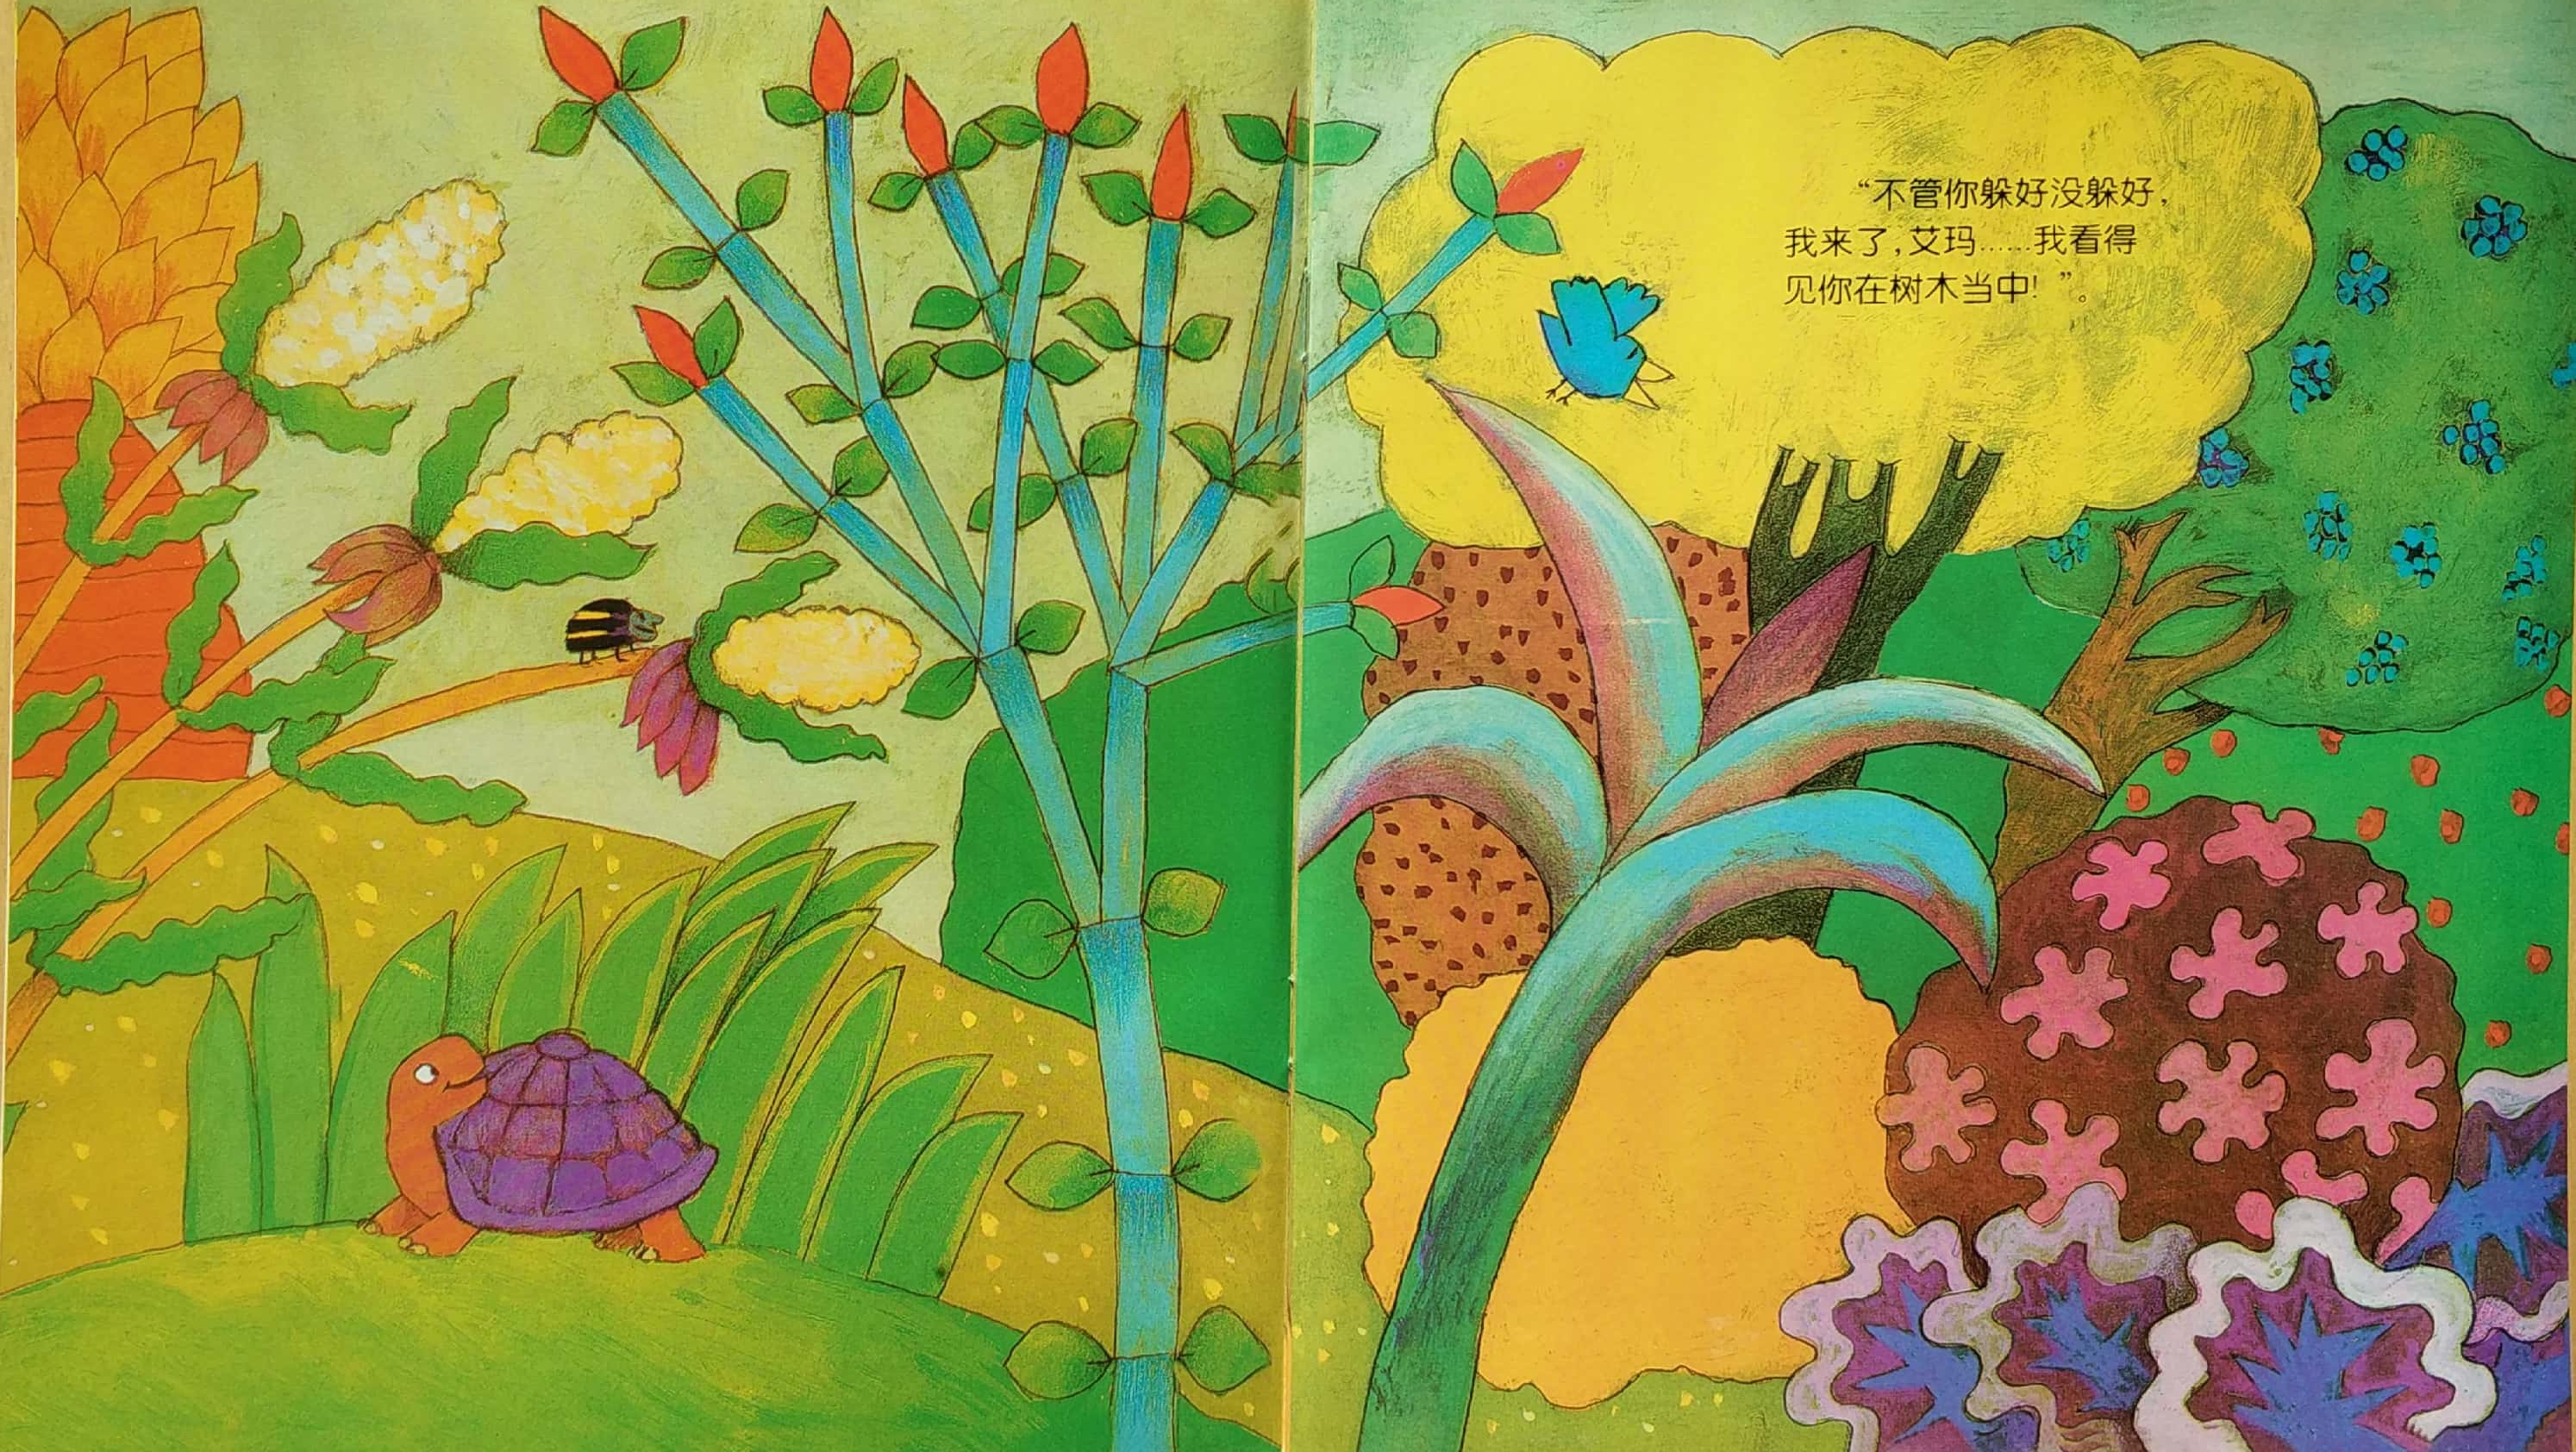 这本画有40多种植物的绘本告诉我们,绘本不仅可以阅读